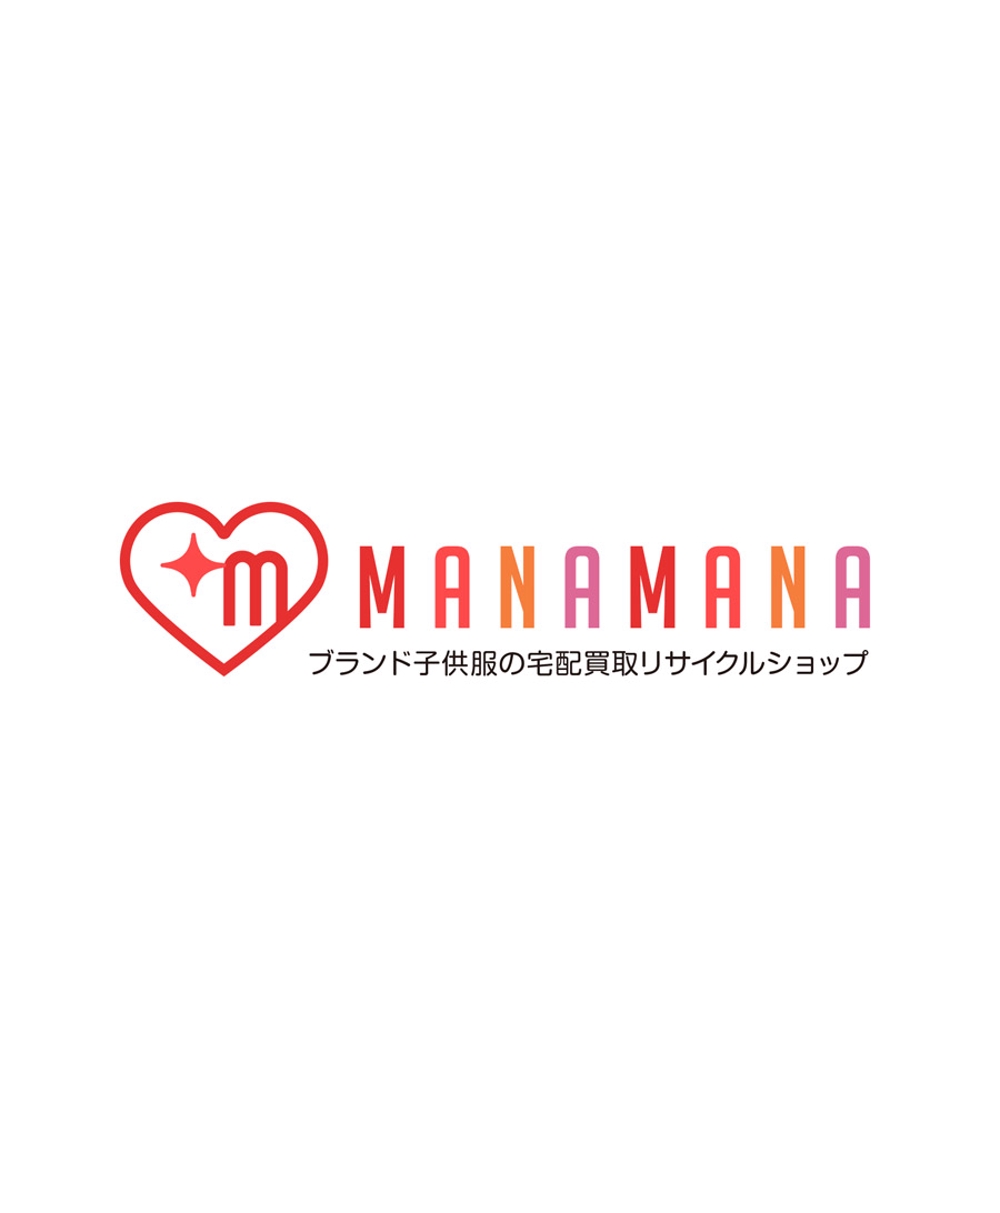 ブランド子供服の買取リサイクルショップサイト「MANAMANA」の看板ロゴ